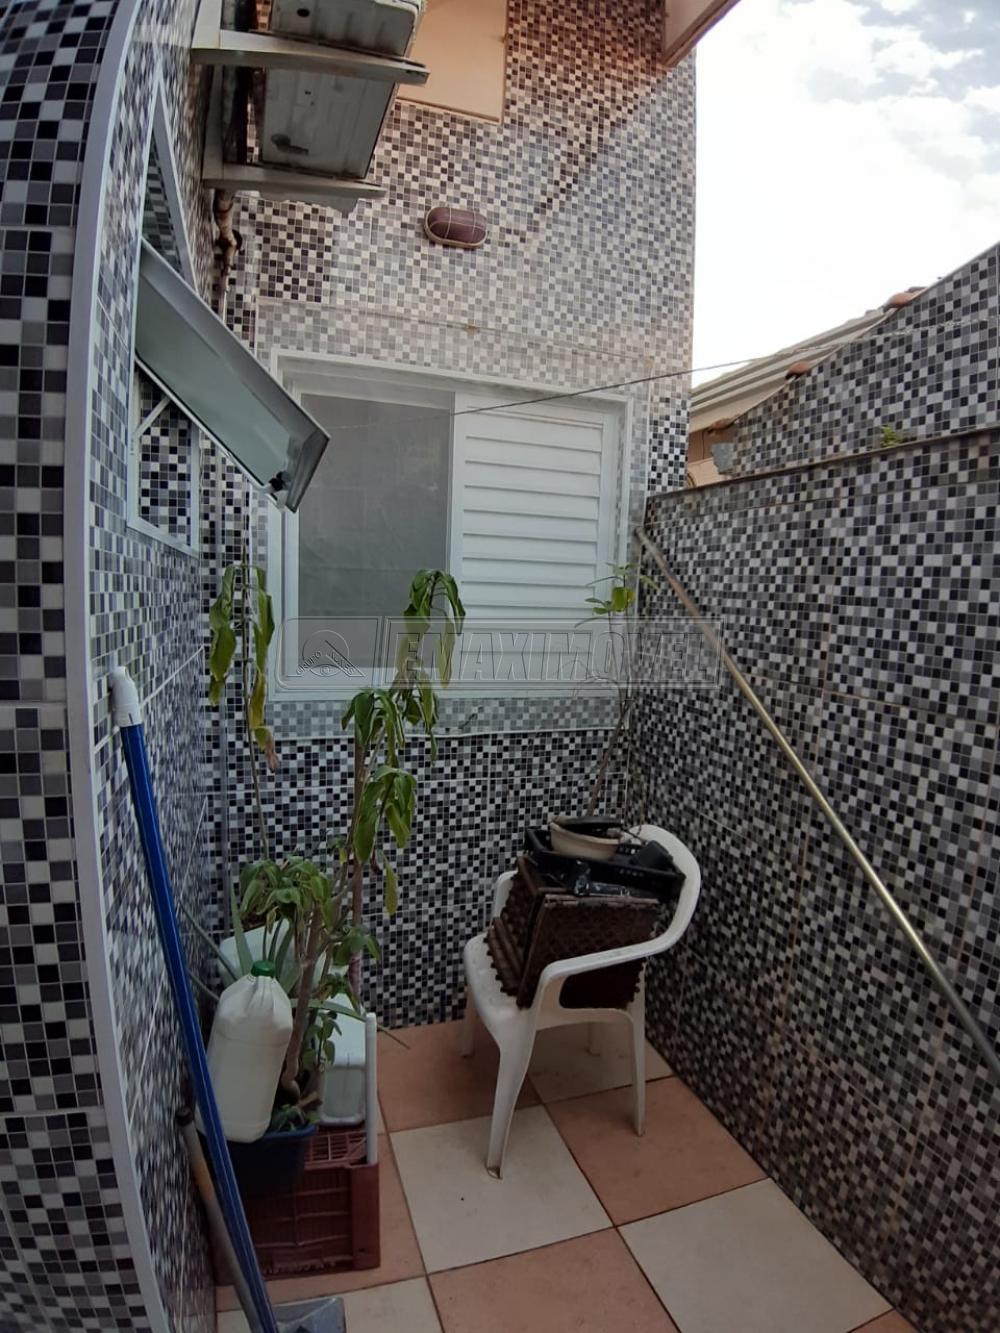 Comprar Casa / em Condomínios em Sorocaba R$ 375.000,00 - Foto 14